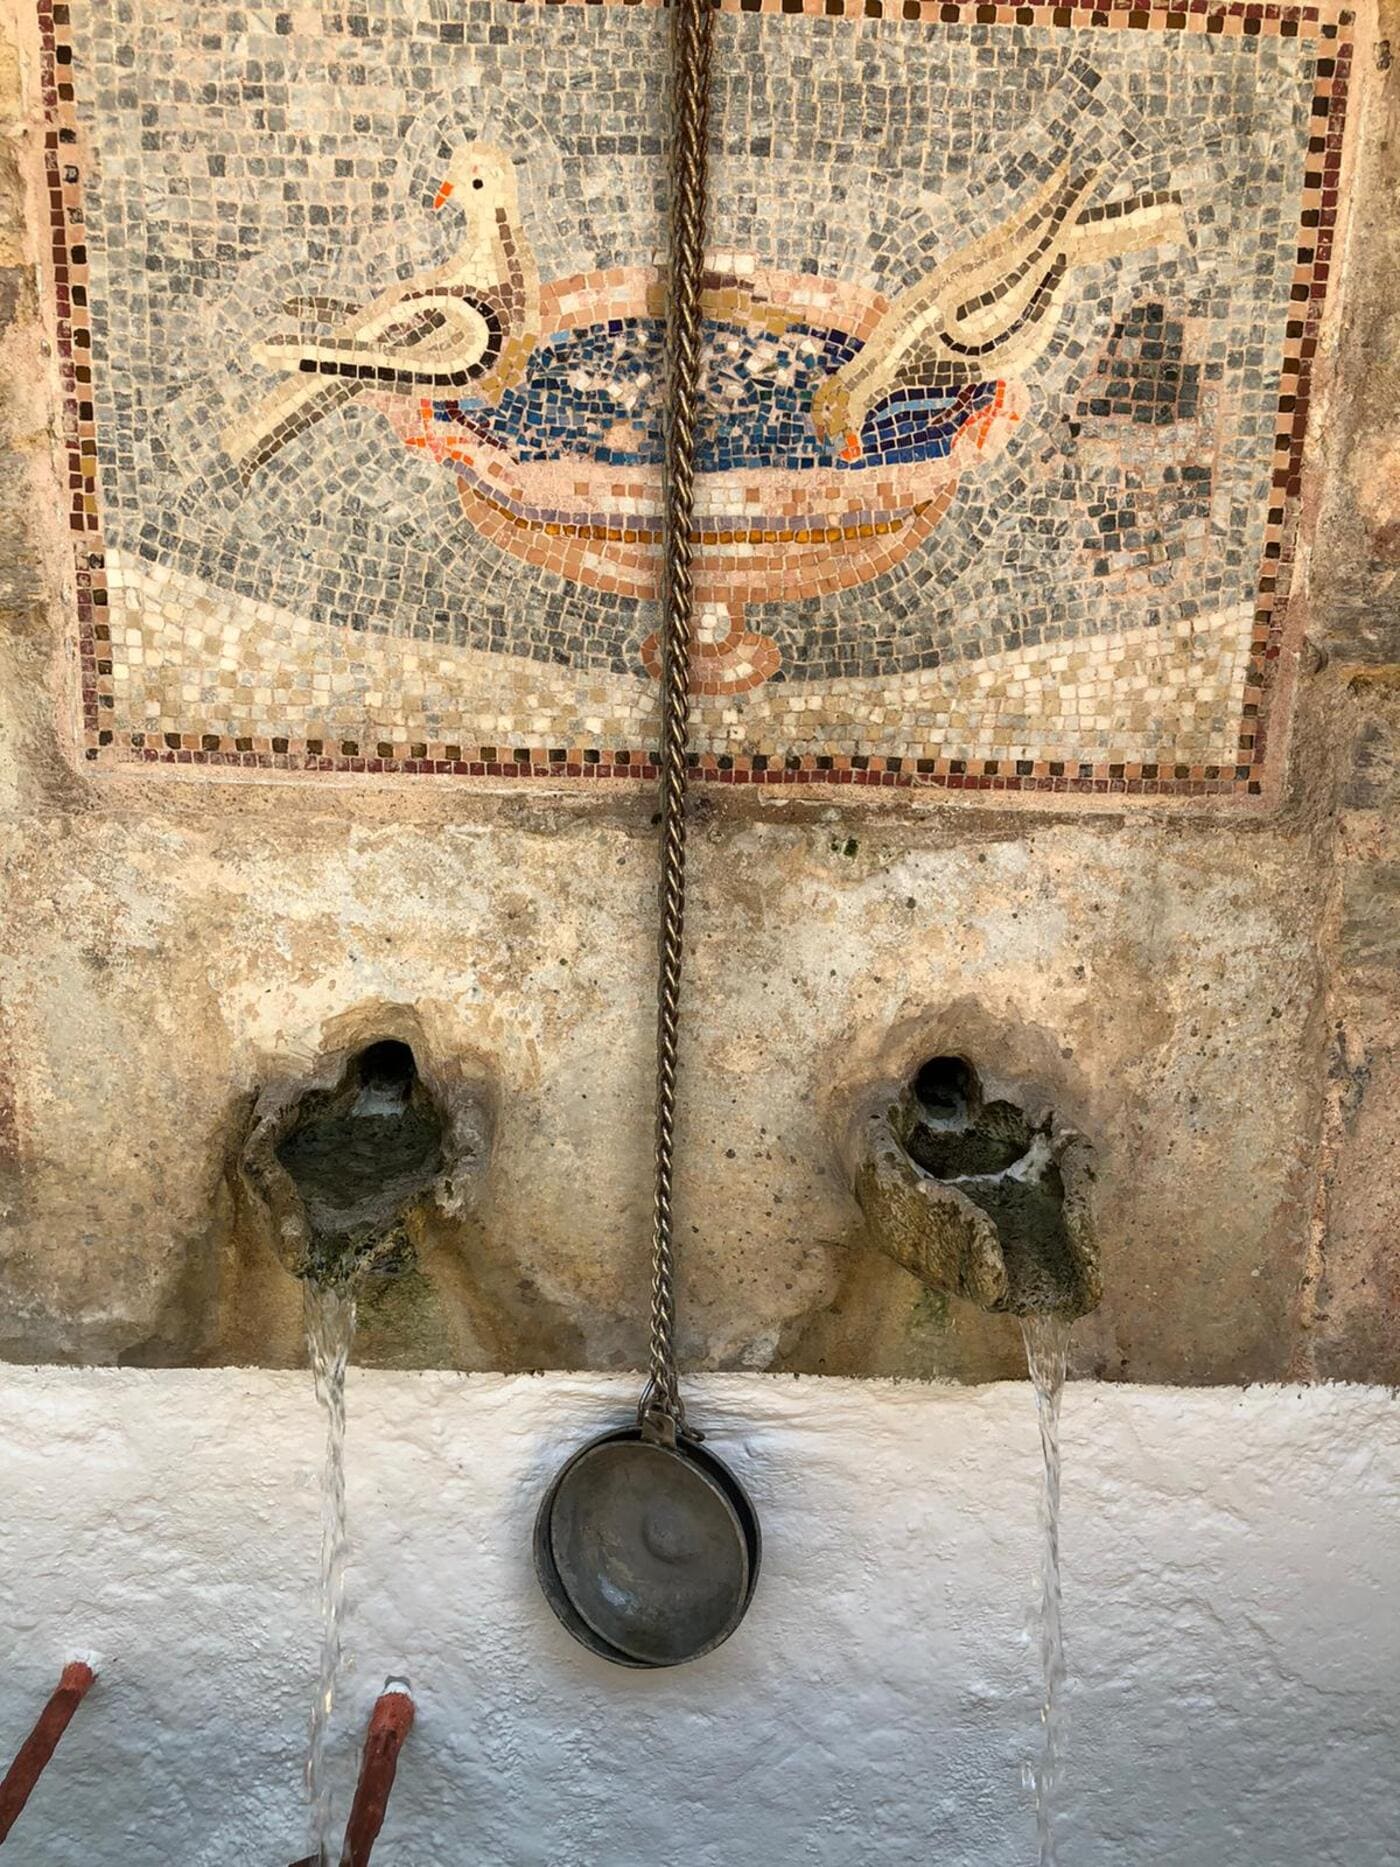 Mosaik mit Fußschale oder Taufbecken, zwei Vögel sitzen auf dem Rand. Kloster Johannes Prodomos Timios